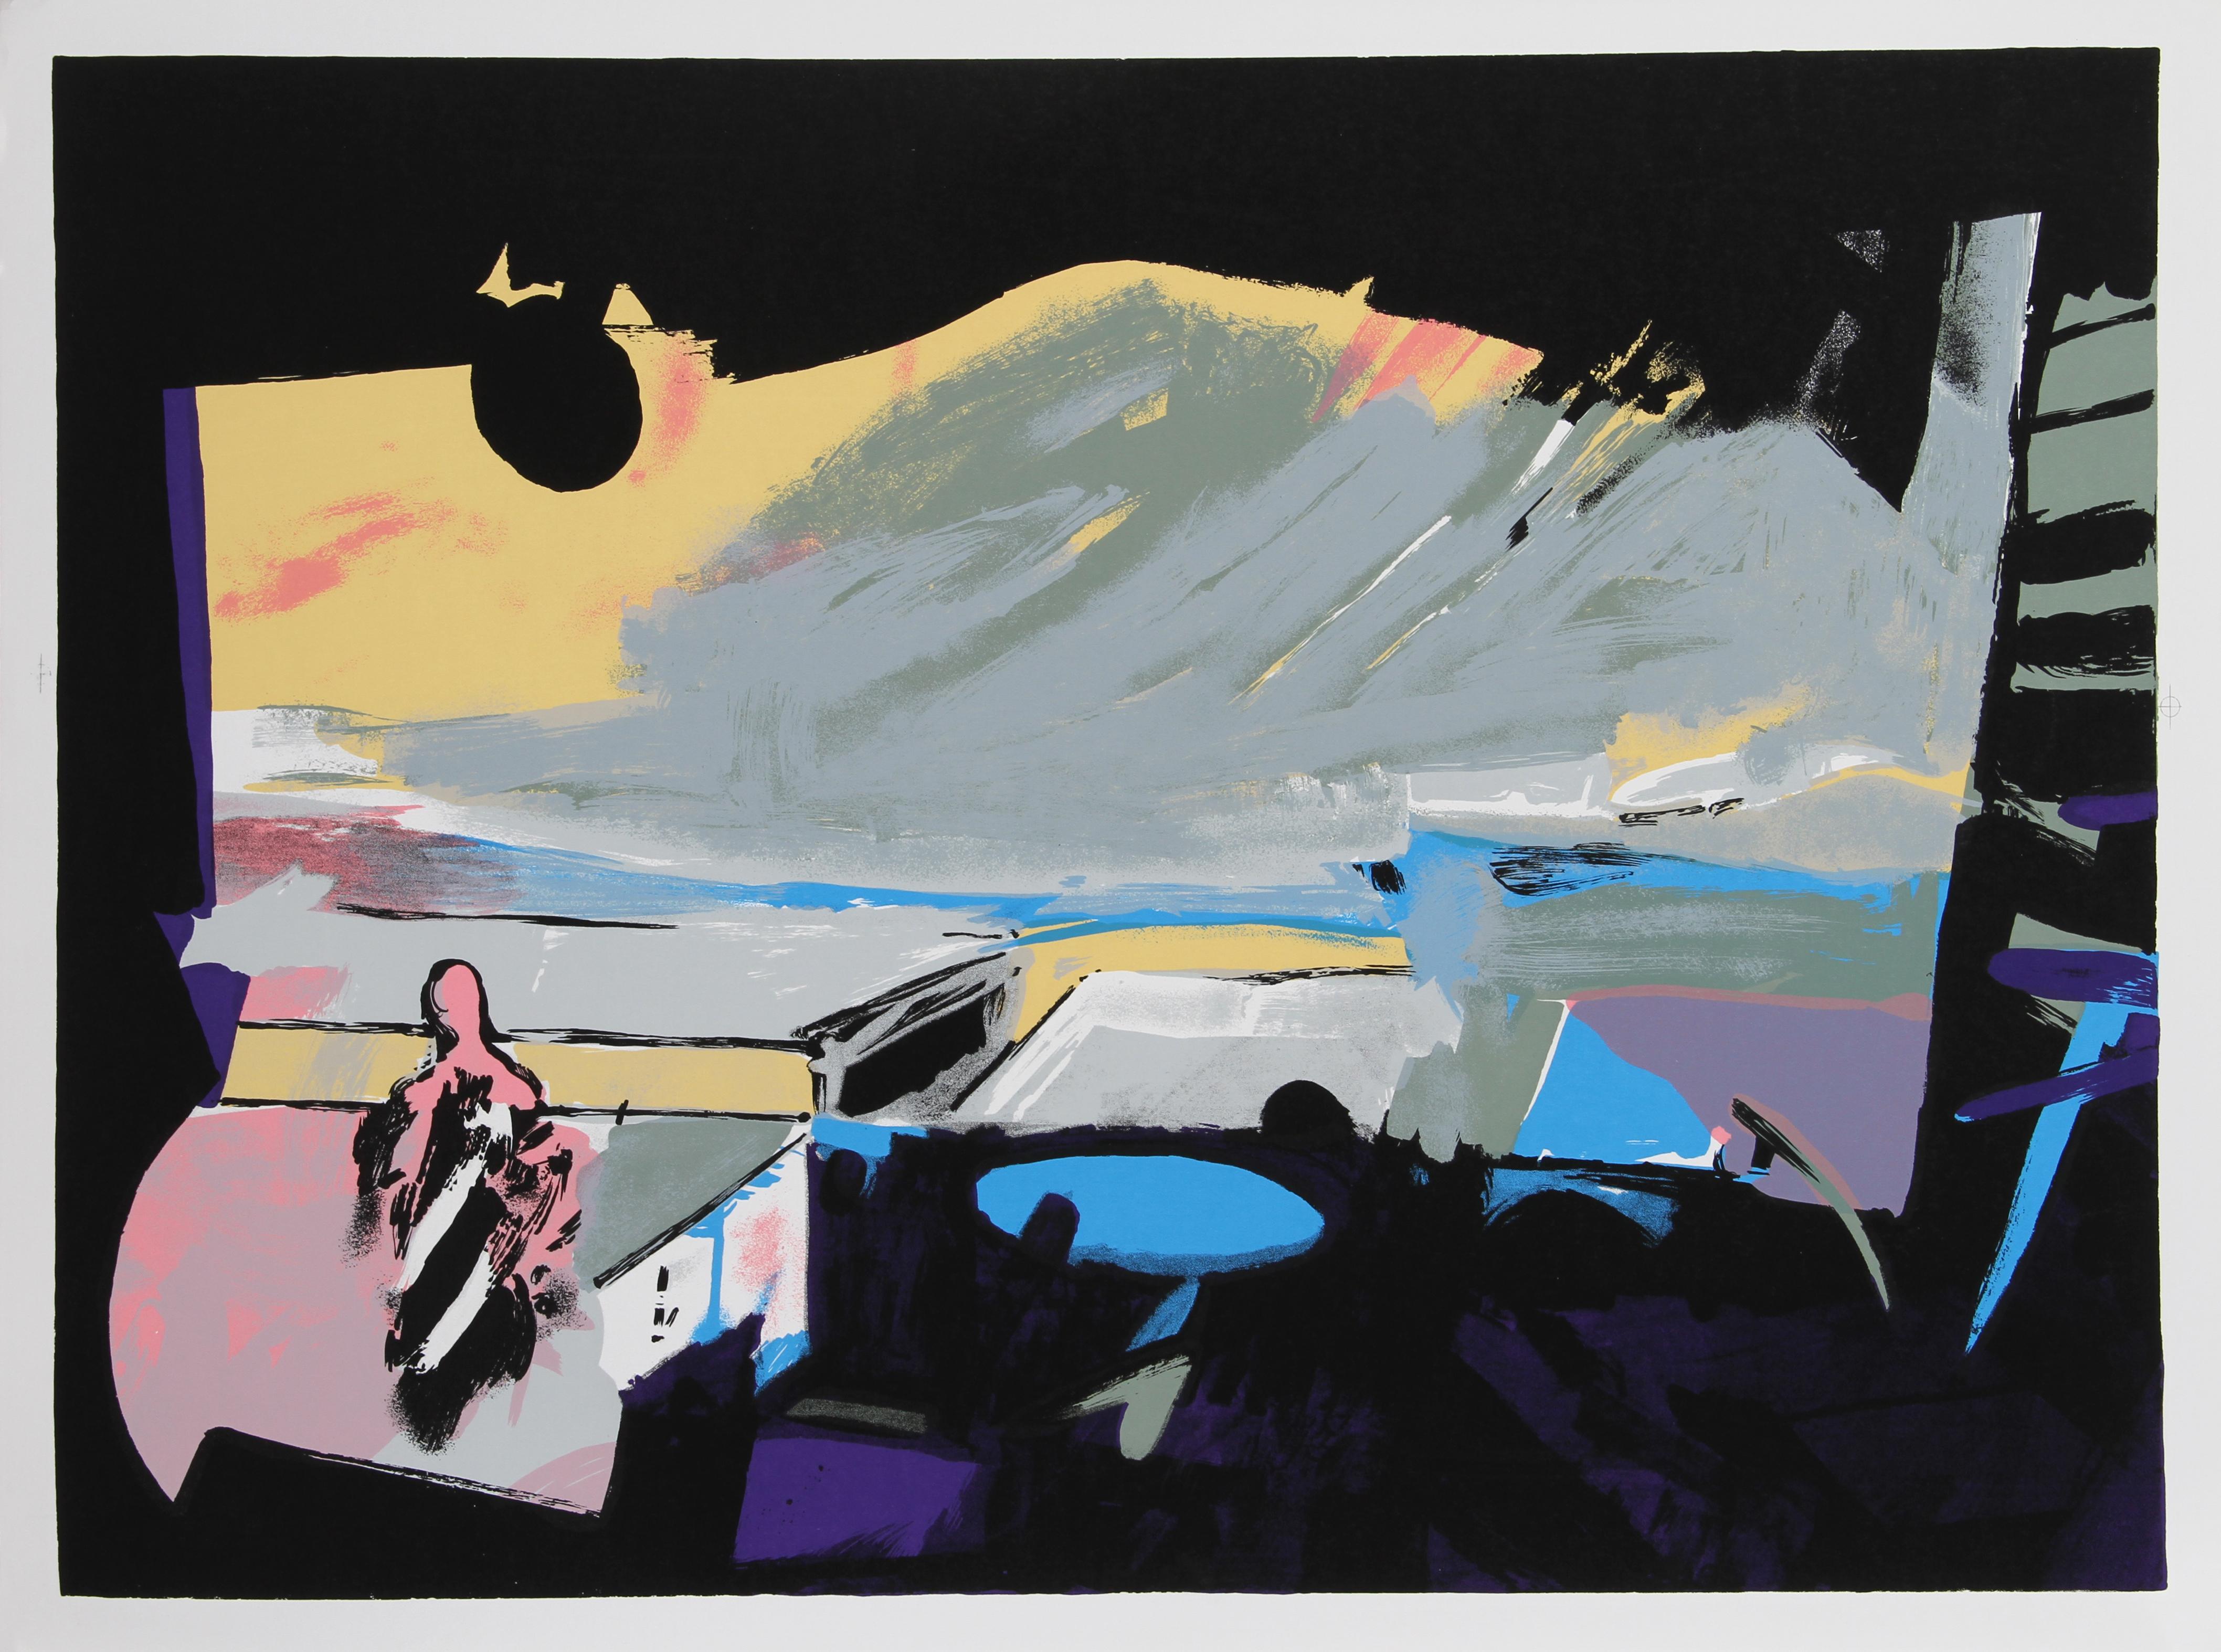 Künstler: John Hultberg
Titel: Weites Fenster I
Jahr: 1977
Medium: Lithographie, mit Bleistift signiert und nummeriert
Auflage: 200
Bildgröße: 24 x 33 Zoll 
Papierformat: 66,04 cm x 88,9 cm (26 in. x 35 in.)